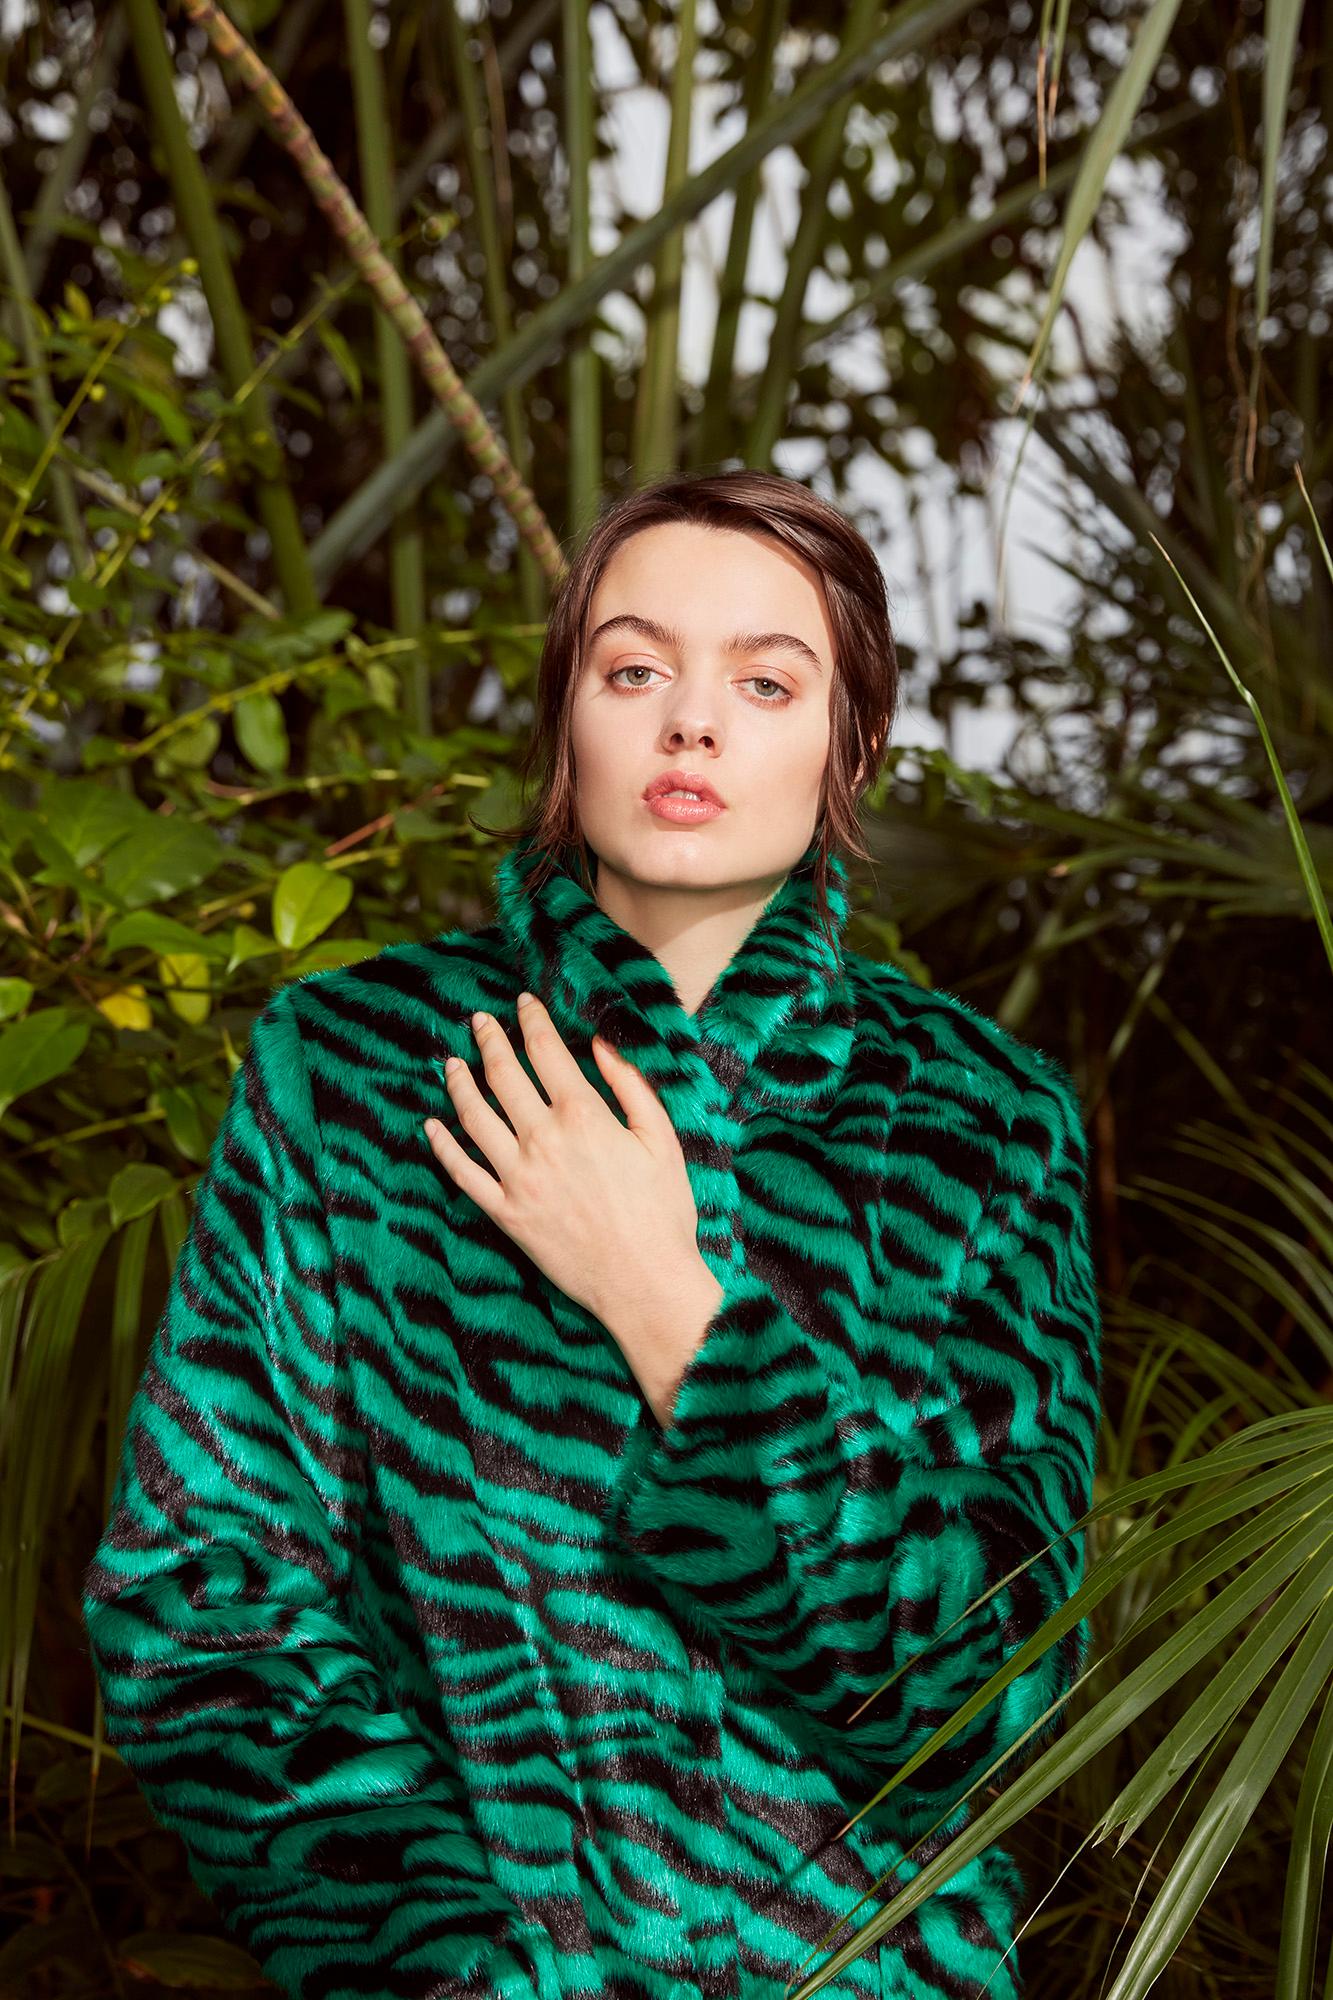 Verheyen London Esmeralda Faux Fur Coat in Emerald Green Zebra Print size uk 12 For Sale 5